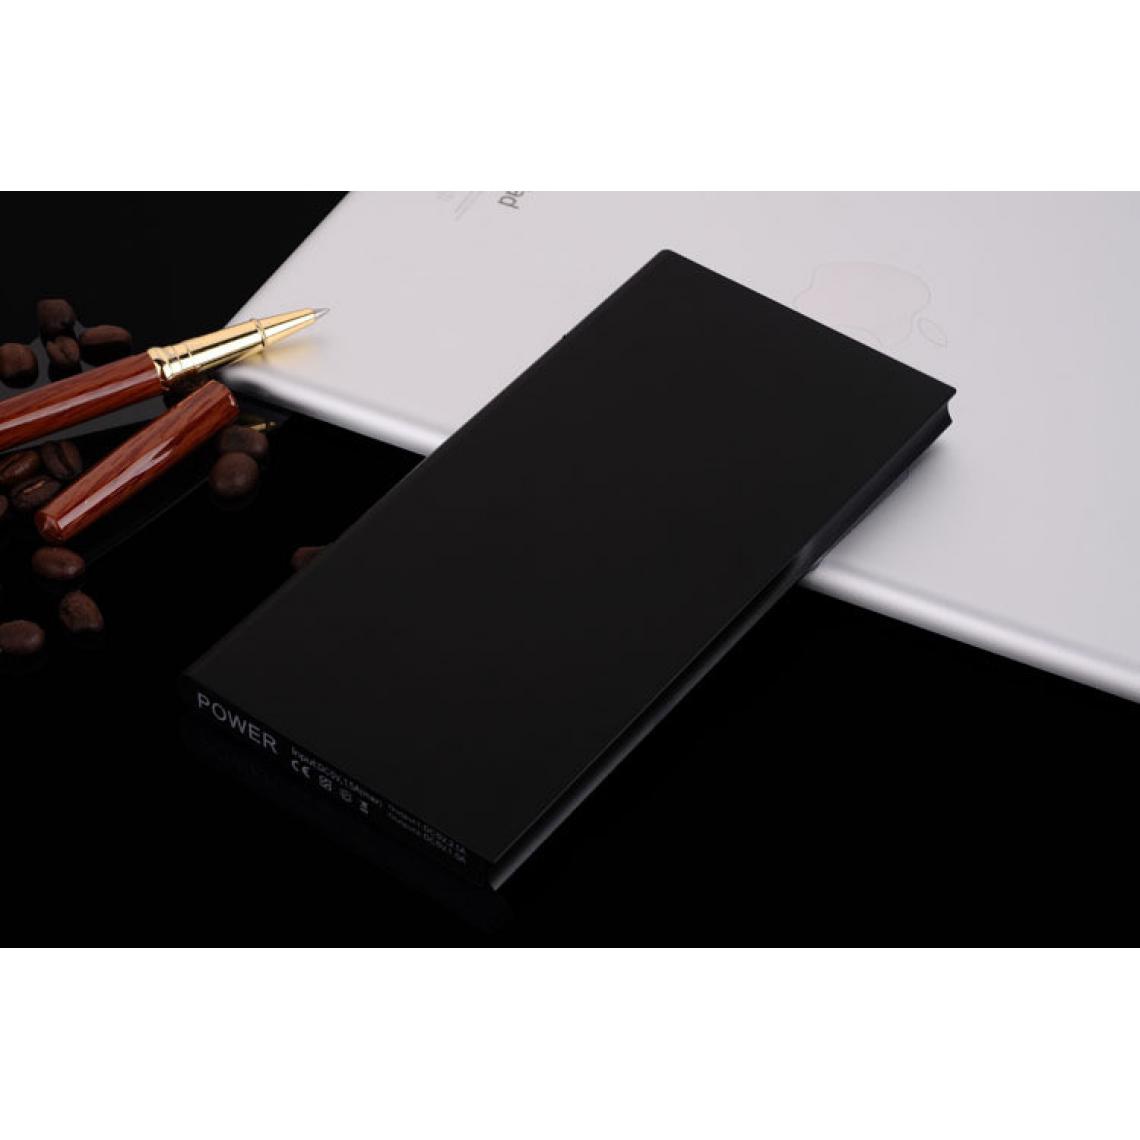 Shot - Batterie Externe Plate pour "XIAOMI Redmi 9A" Smartphone Tablette Chargeur Power Bank 6000mAh 2 Port USB (NOIR) - Chargeur secteur téléphone